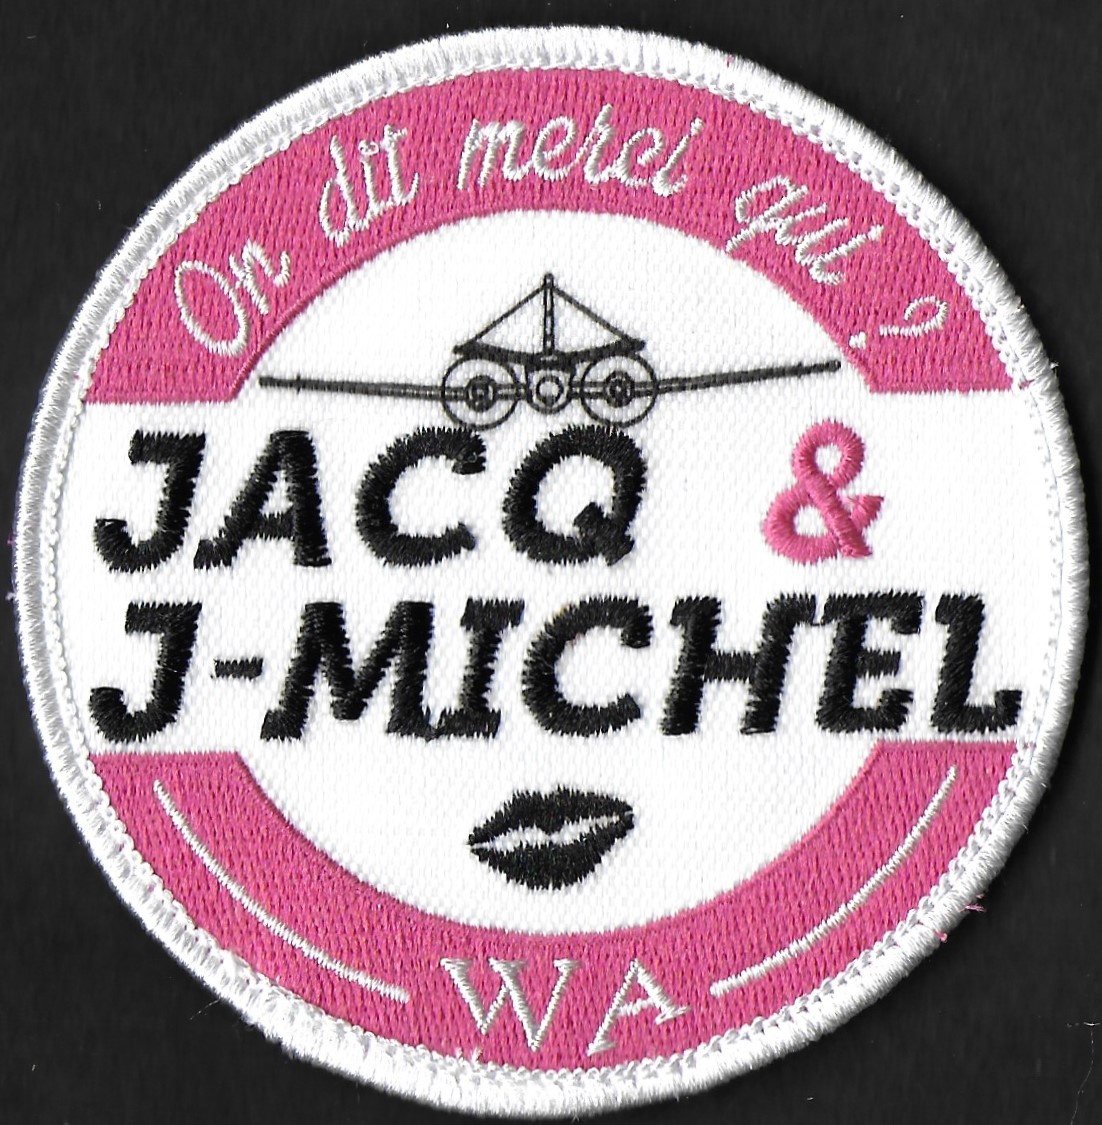 23 F - ATL 2 - WA -on dit merci qui - Jacq & J-michel